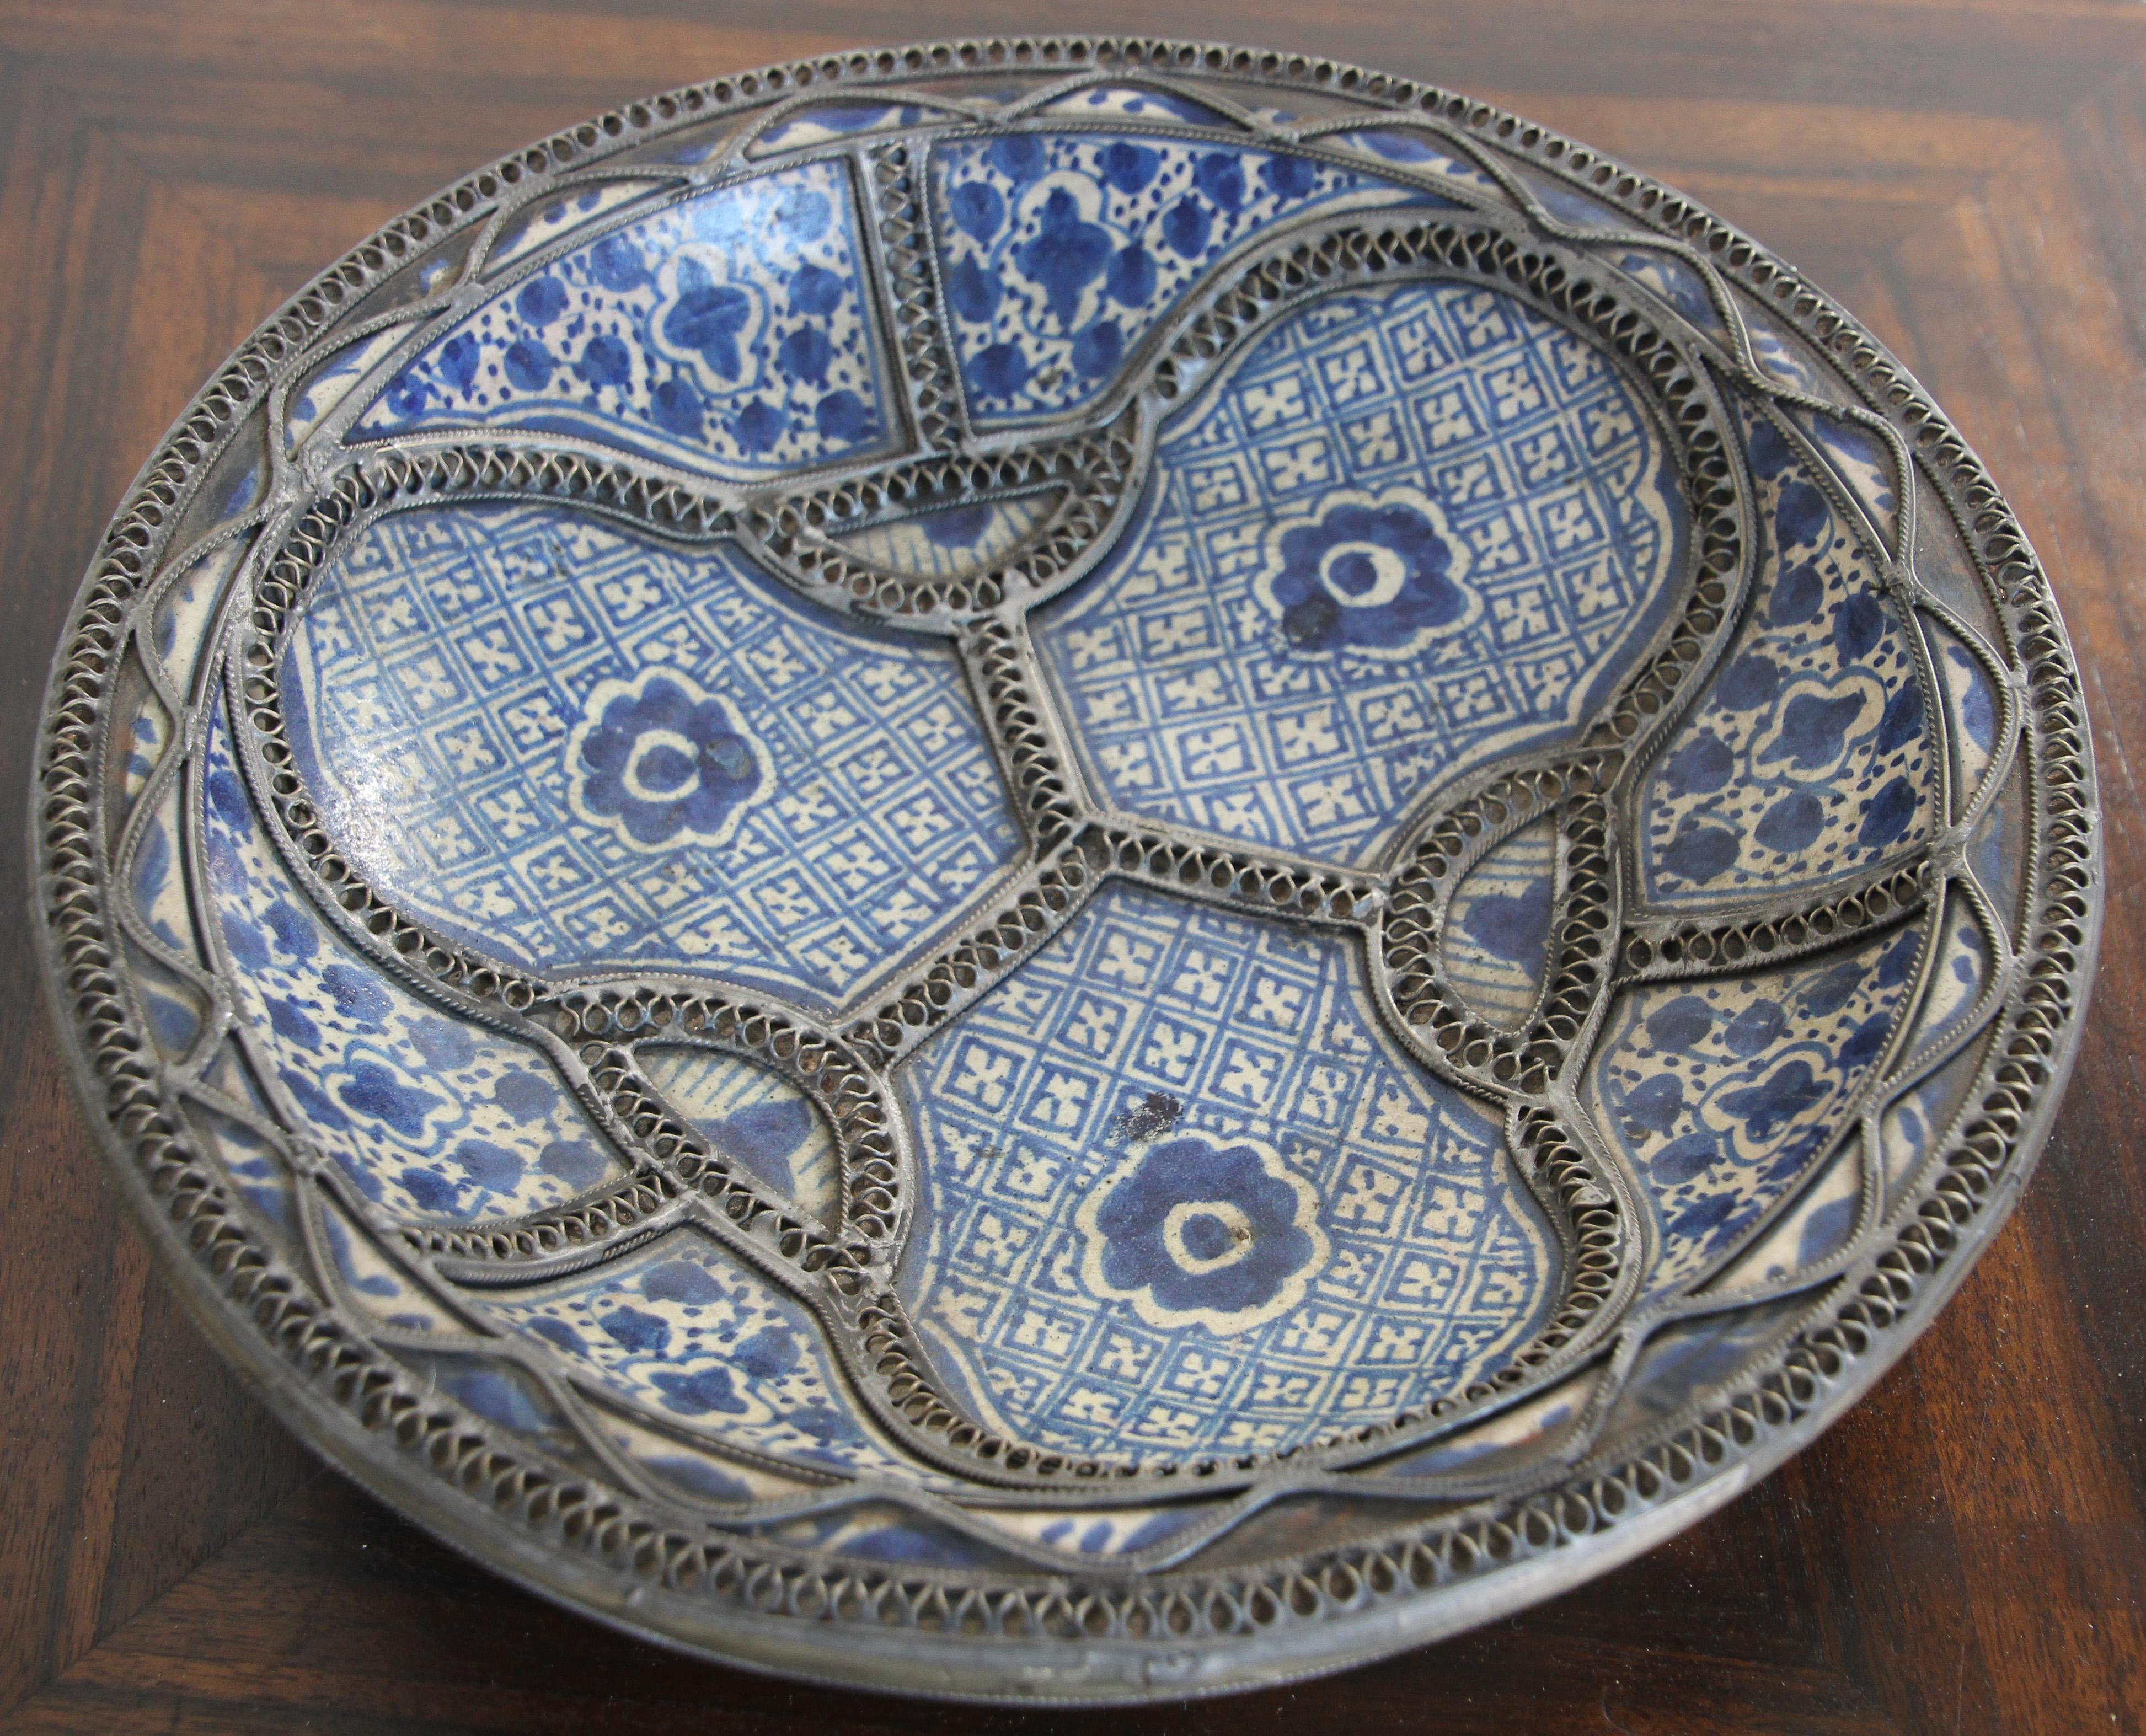 Handgefertigte marokkanische Schale aus polychromer, dekorativer Keramik, Schale aus Fes. 
Bleu de Fez, sehr schöne, von einem Künstler in Fez handgemalte Designs.
Geometrische und florale maurische Muster, verziert mit filigranem